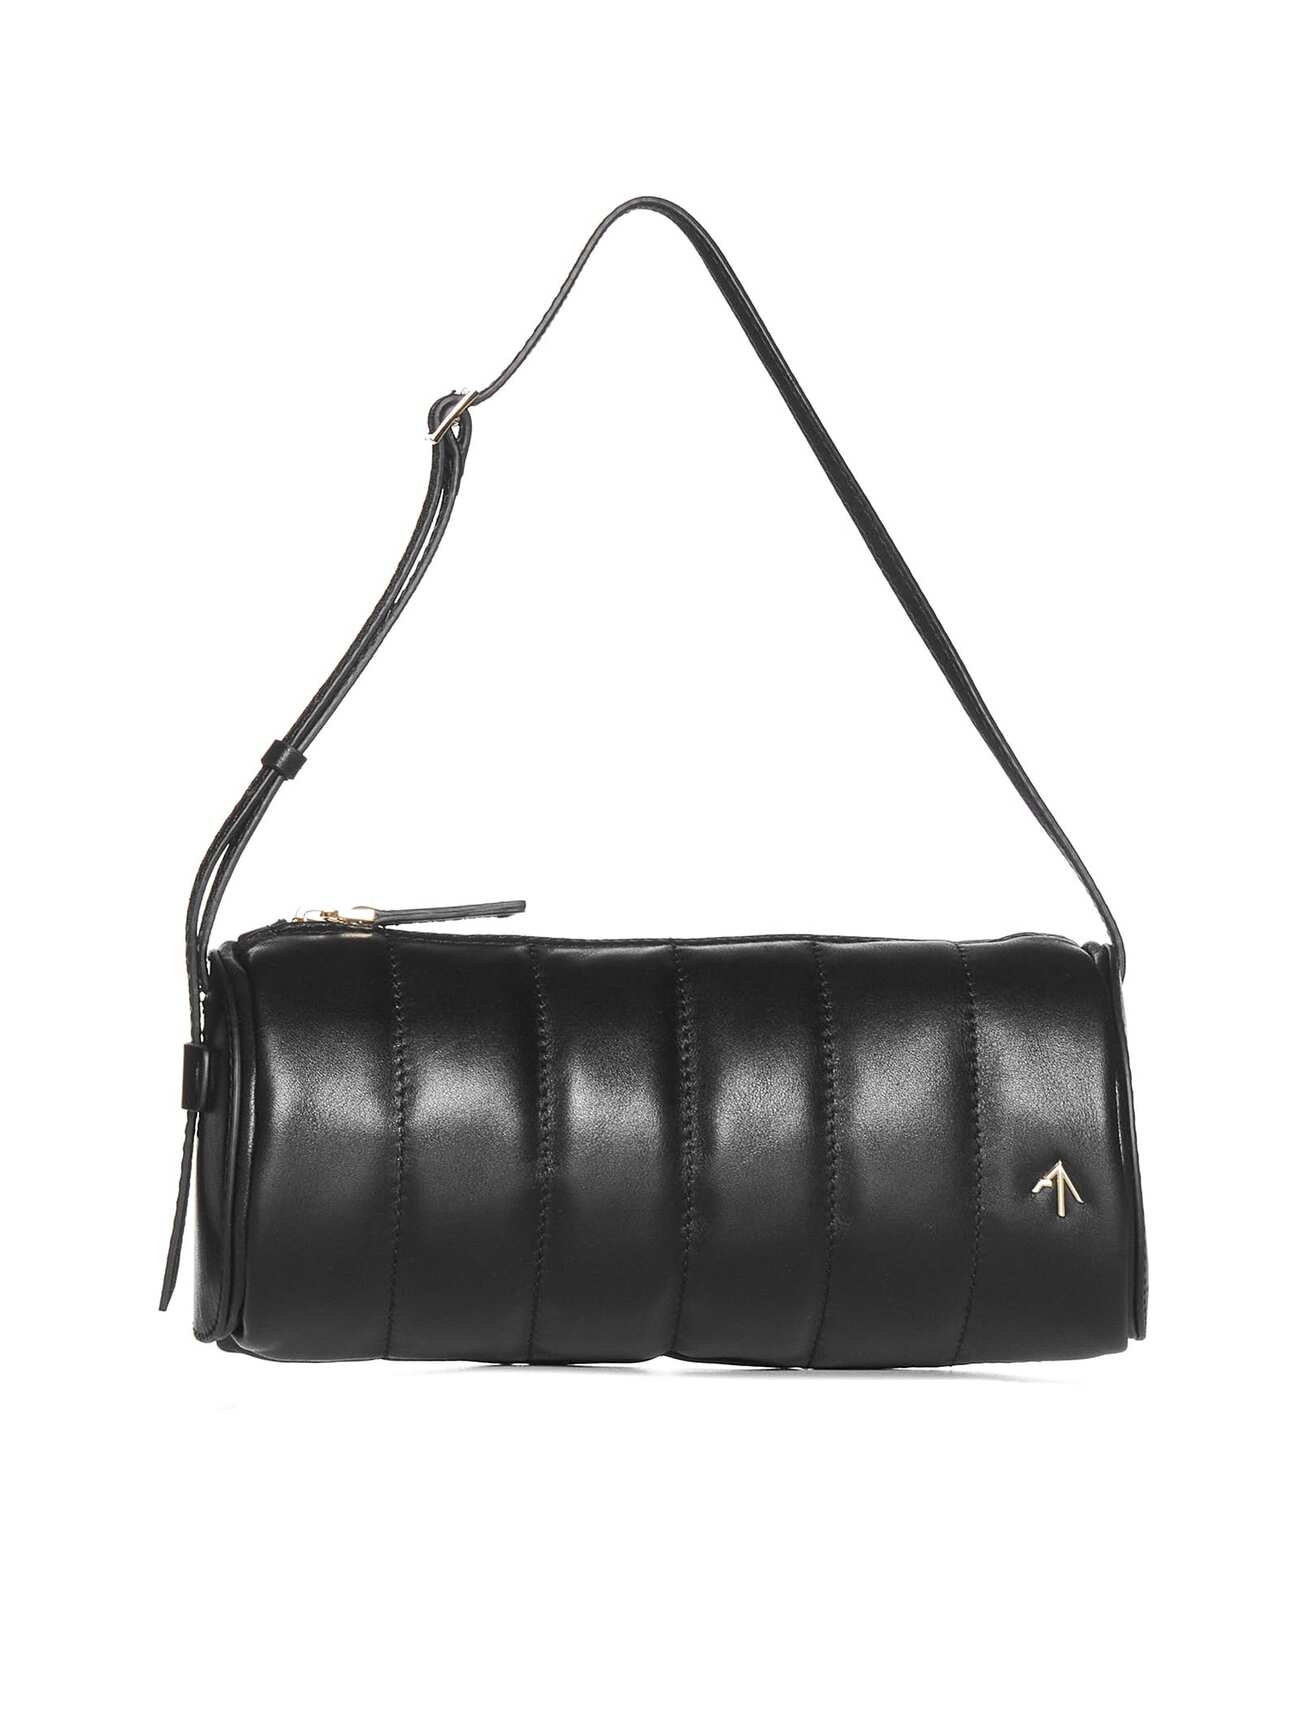 MANU Atelier Shoulder Bag in black